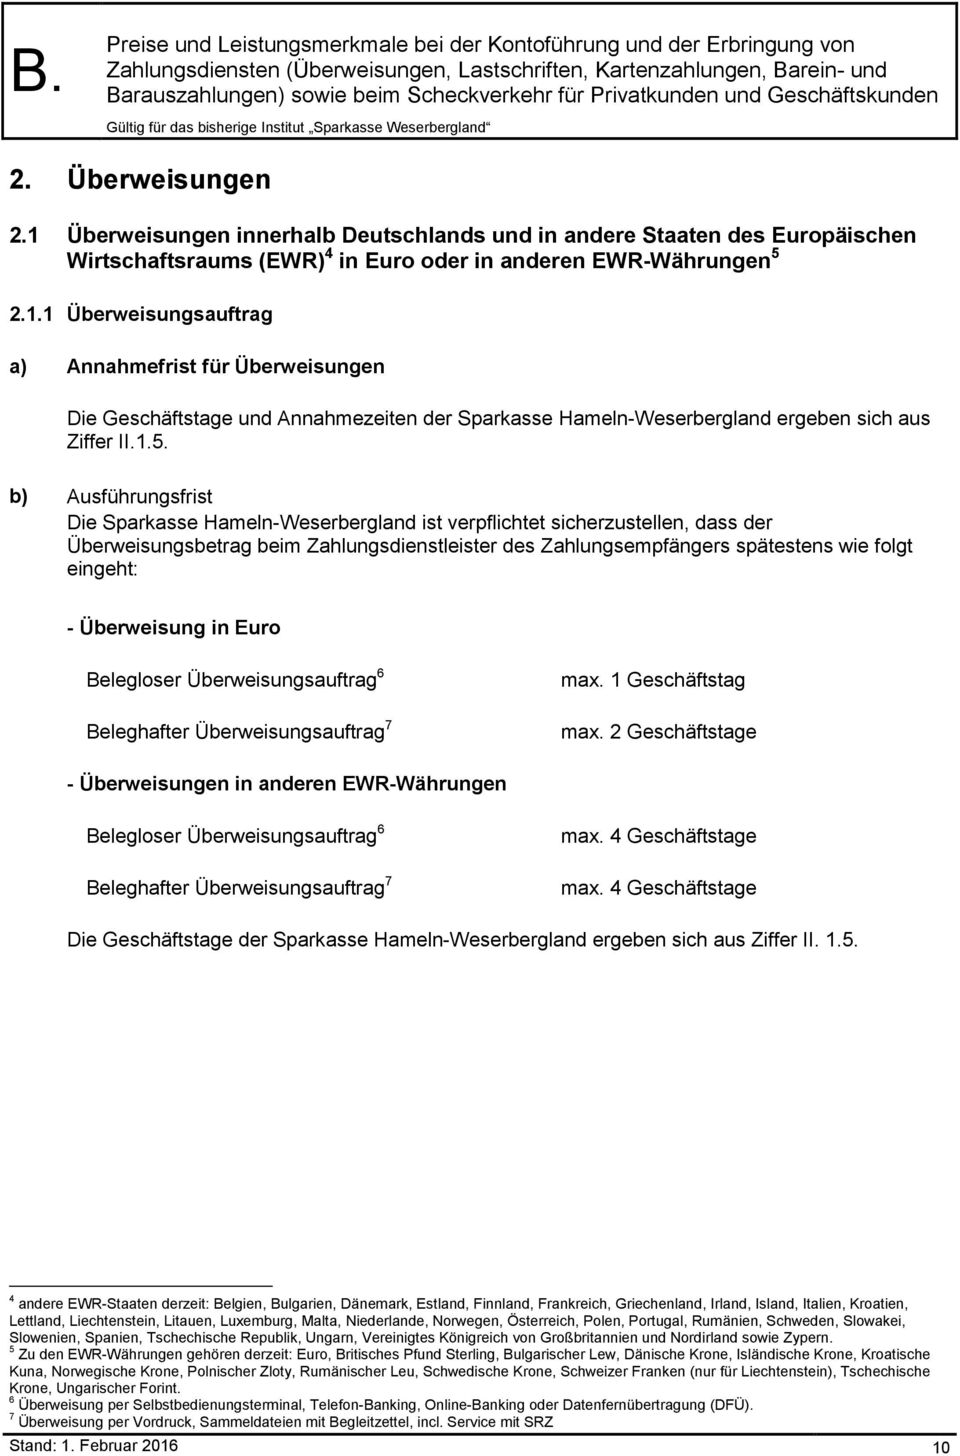 1.5. b) Ausführungsfrist Die Sparkasse Hameln-Weserbergland ist verpflichtet sicherzustellen, dass der Überweisungsbetrag beim Zahlungsdienstleister des Zahlungsempfängers spätestens wie folgt